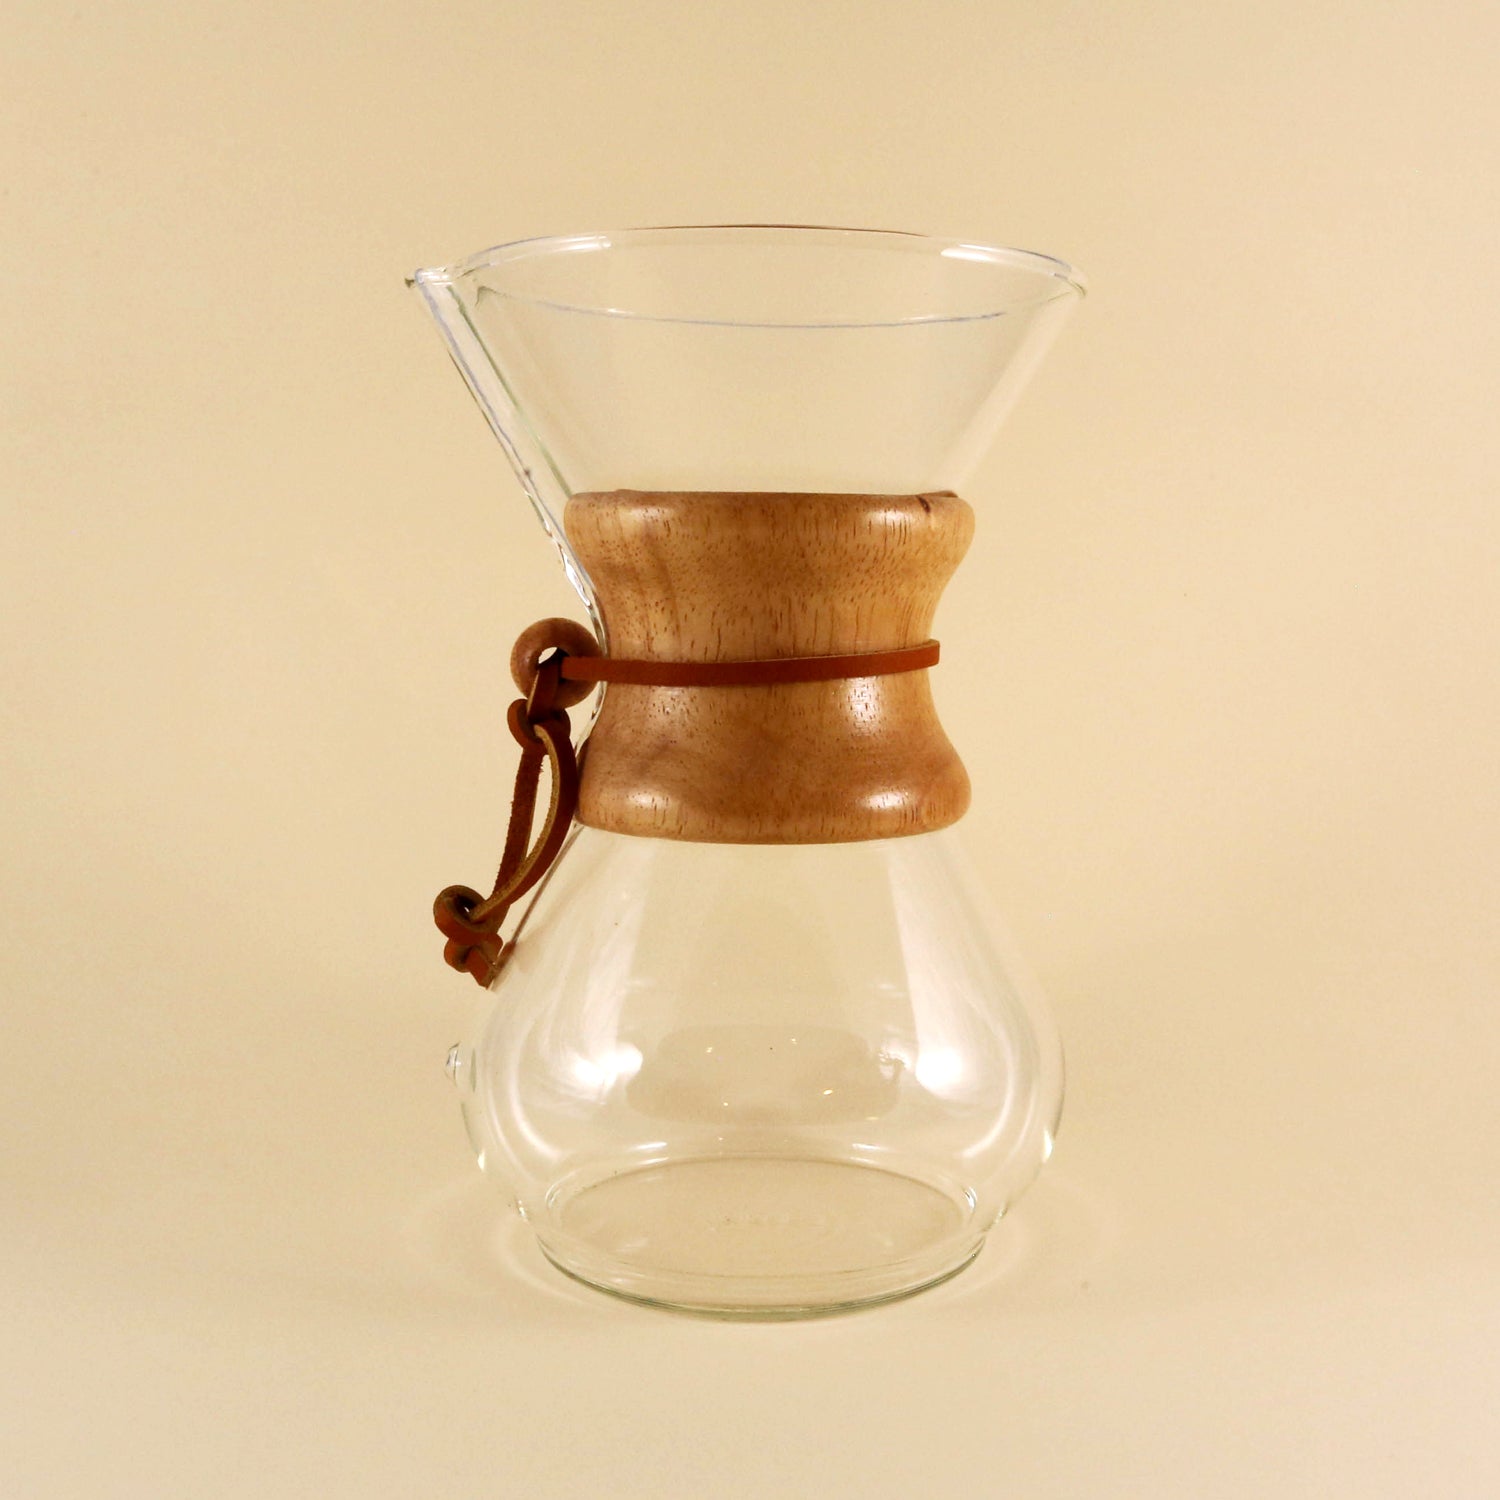 Chemex Brewer 6 Cup - Esselon Coffee